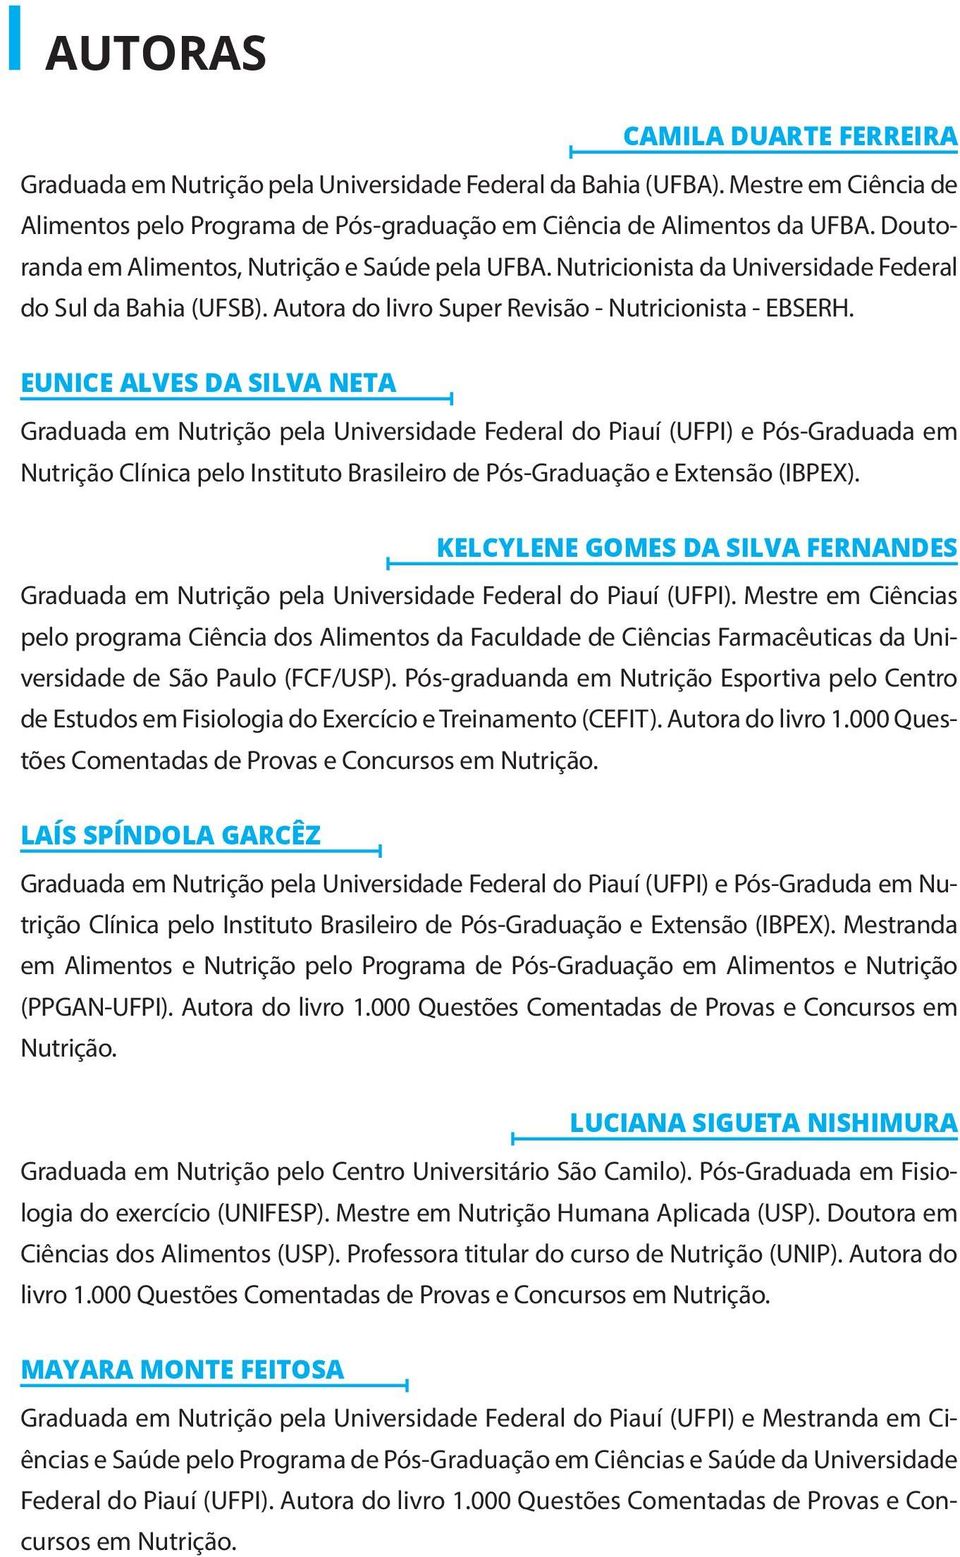 EUNICE ALVES DA SILVA NETA Graduada em Nutrição pela Universidade Federal do Piauí (UFPI) e Pós-Graduada em Nutrição Clínica pelo Instituto Brasileiro de Pós-Graduação e Extensão (IBPEX).